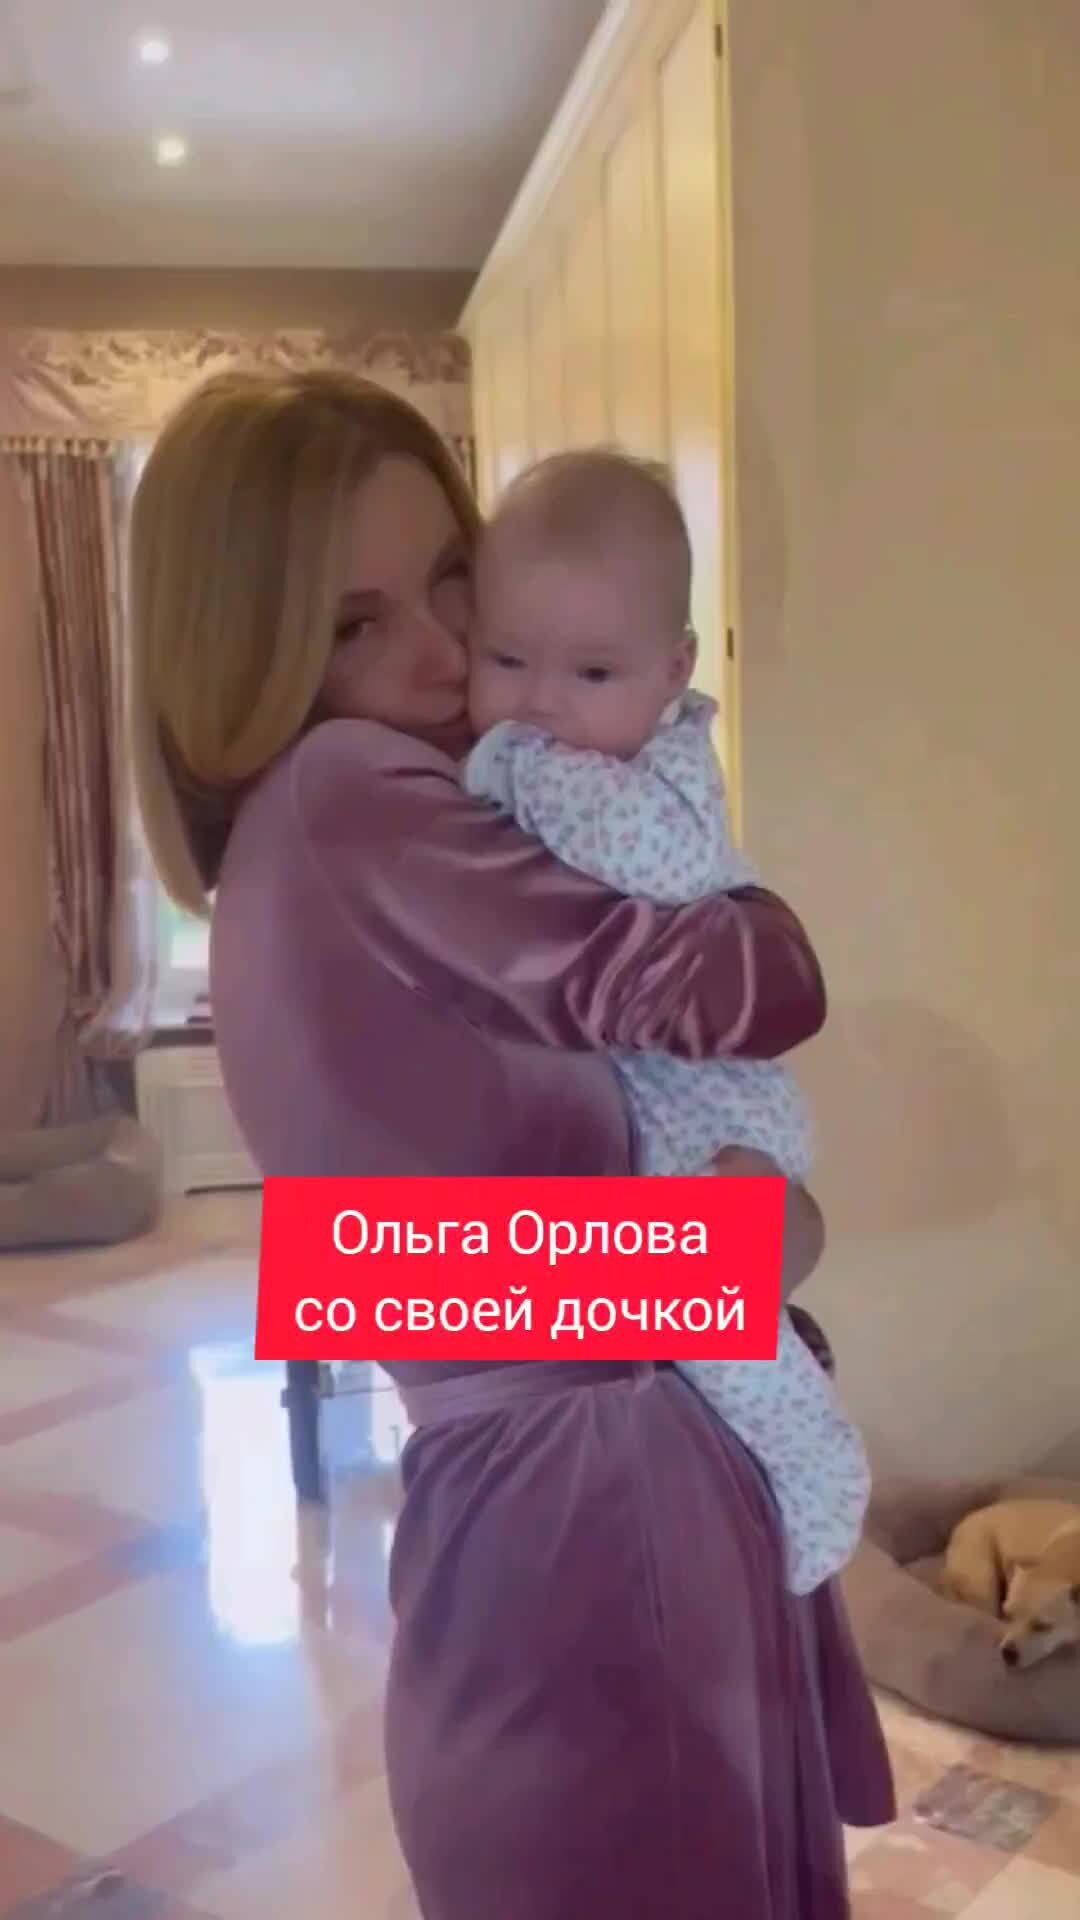 Ольга орлова с дочкой фото